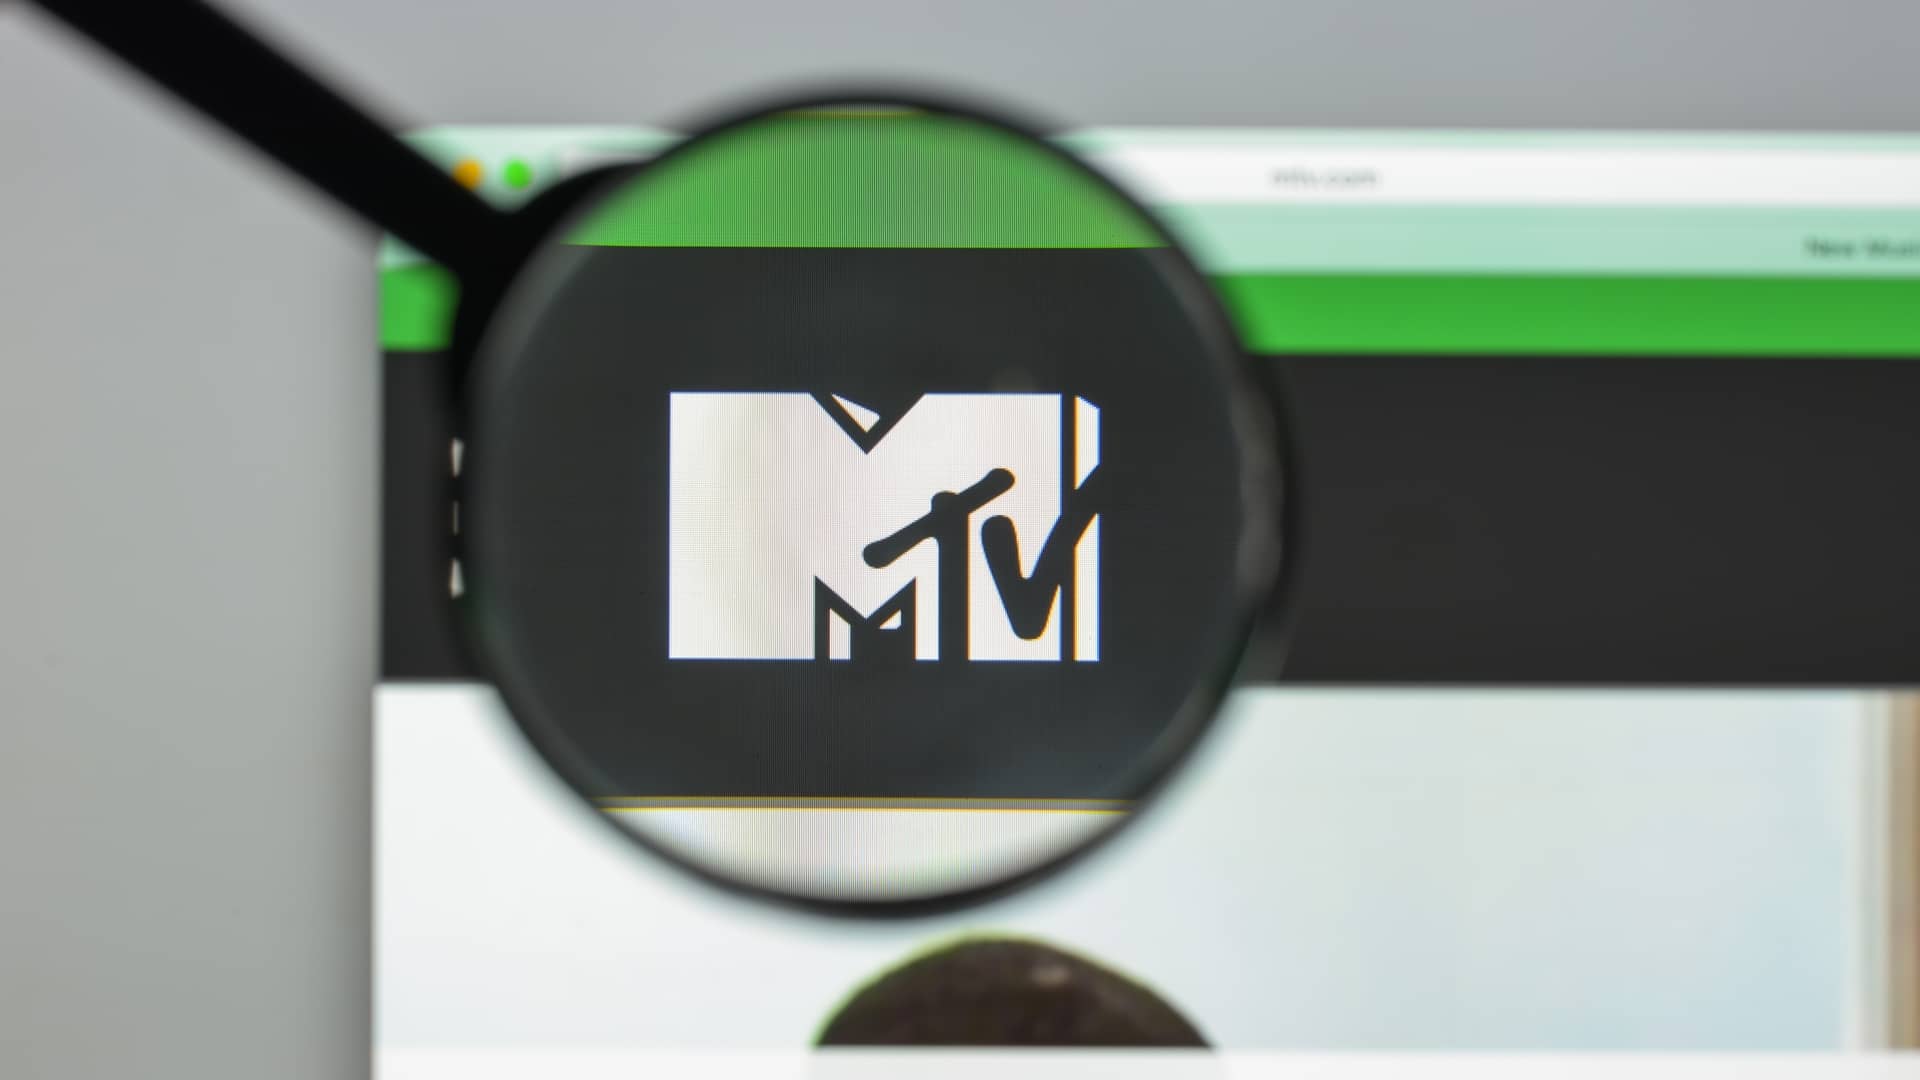 logotipo de la mtv en la pantalla de un ordenador para representar el servicio de este canal con totalplay